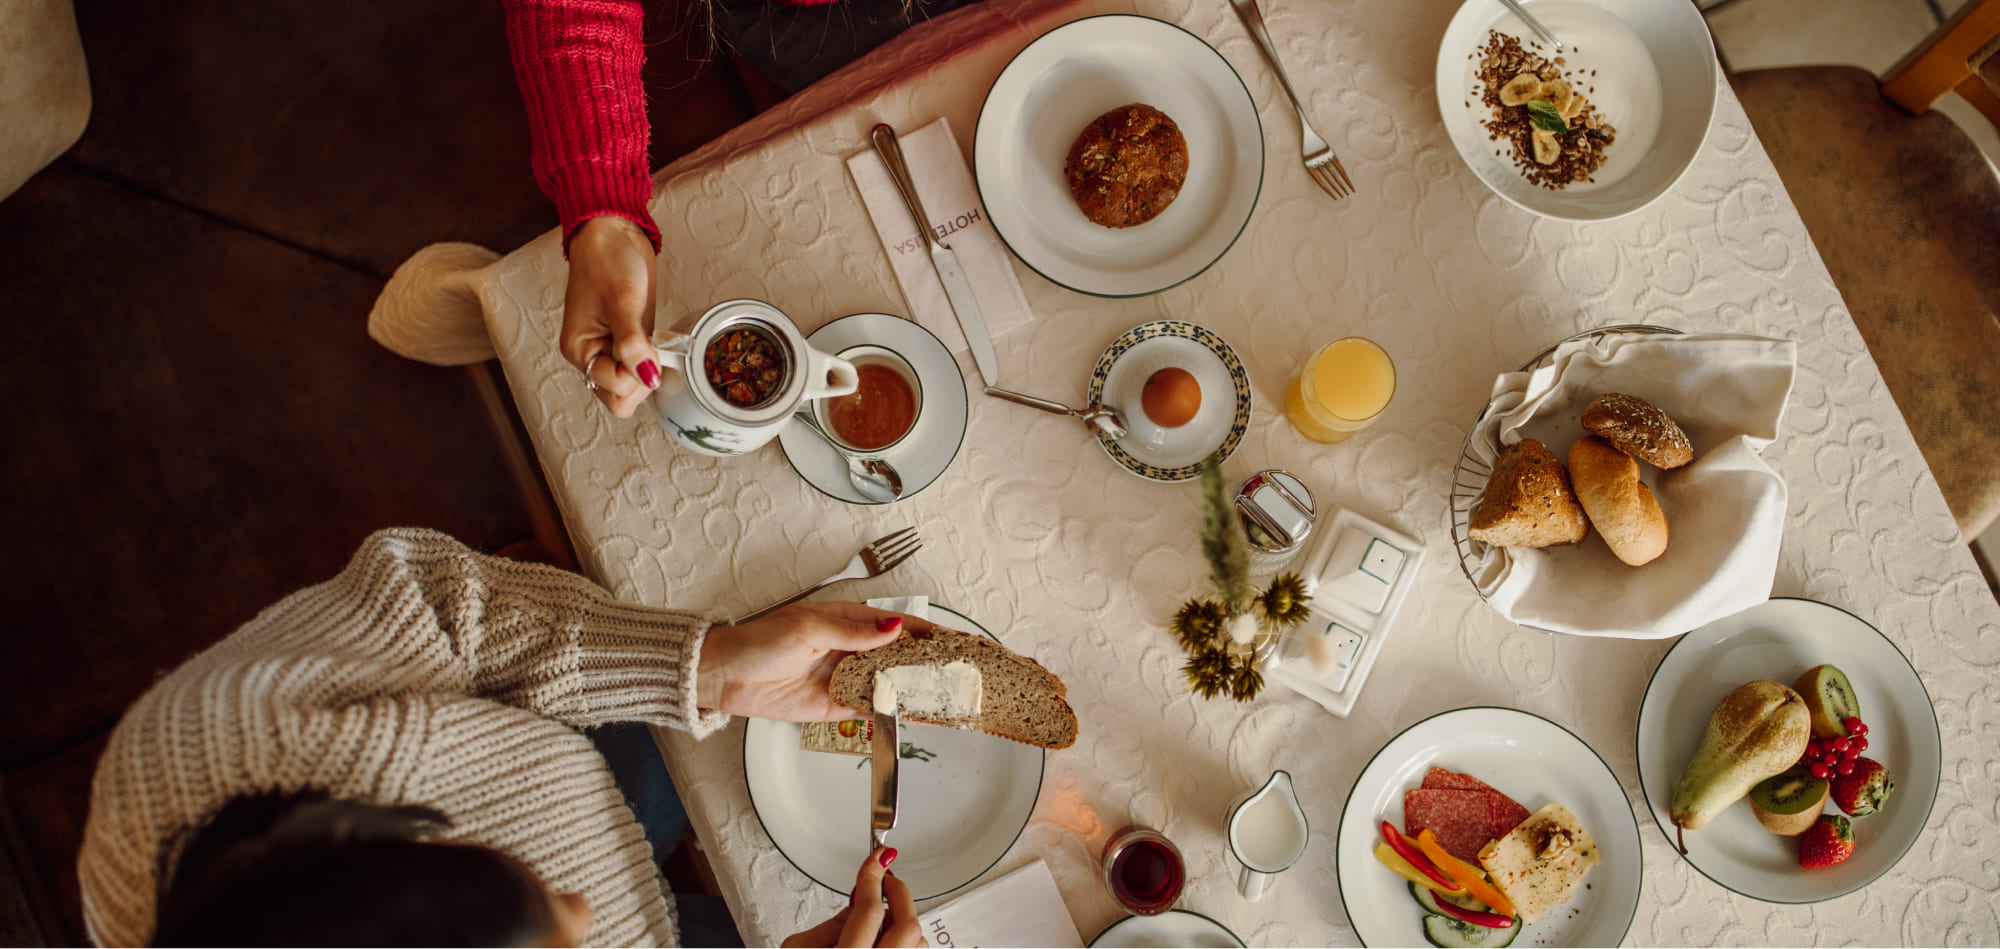 Frühstück im Bed & Breakfast Hotel im Salzburger Land © Matthias Warter